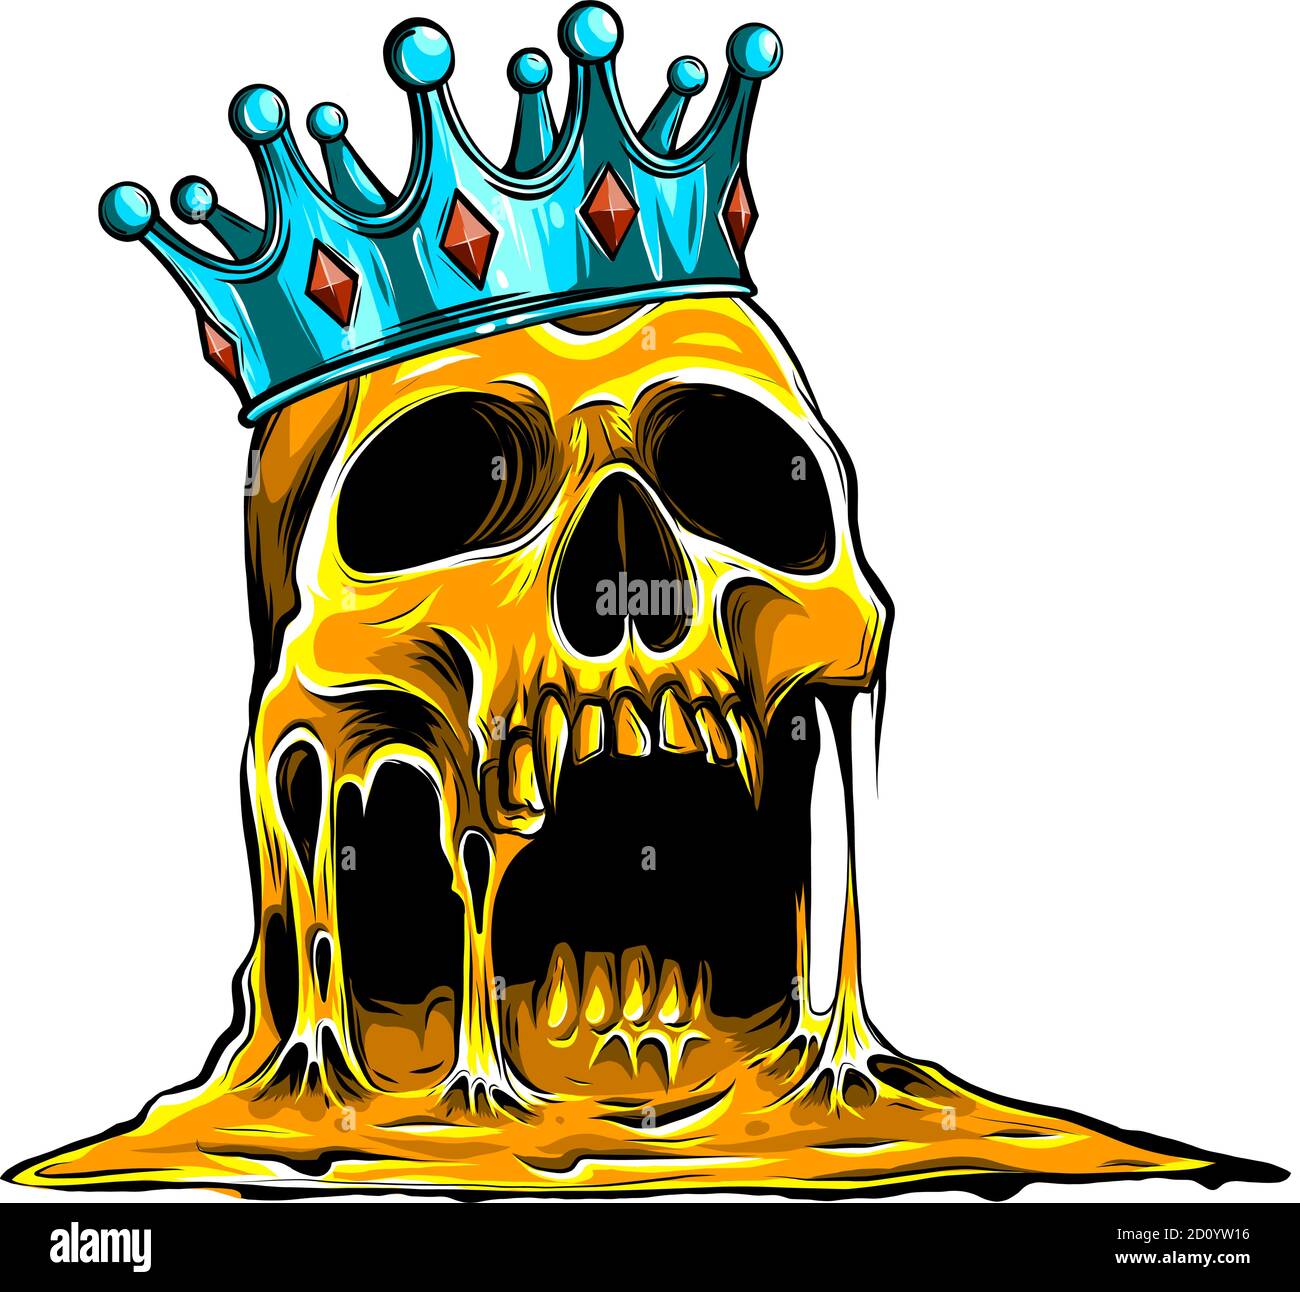 Le crâne de roi couronné symbole de crâne humain effrayant avec couronne d'or royal. Illustration de Vecteur